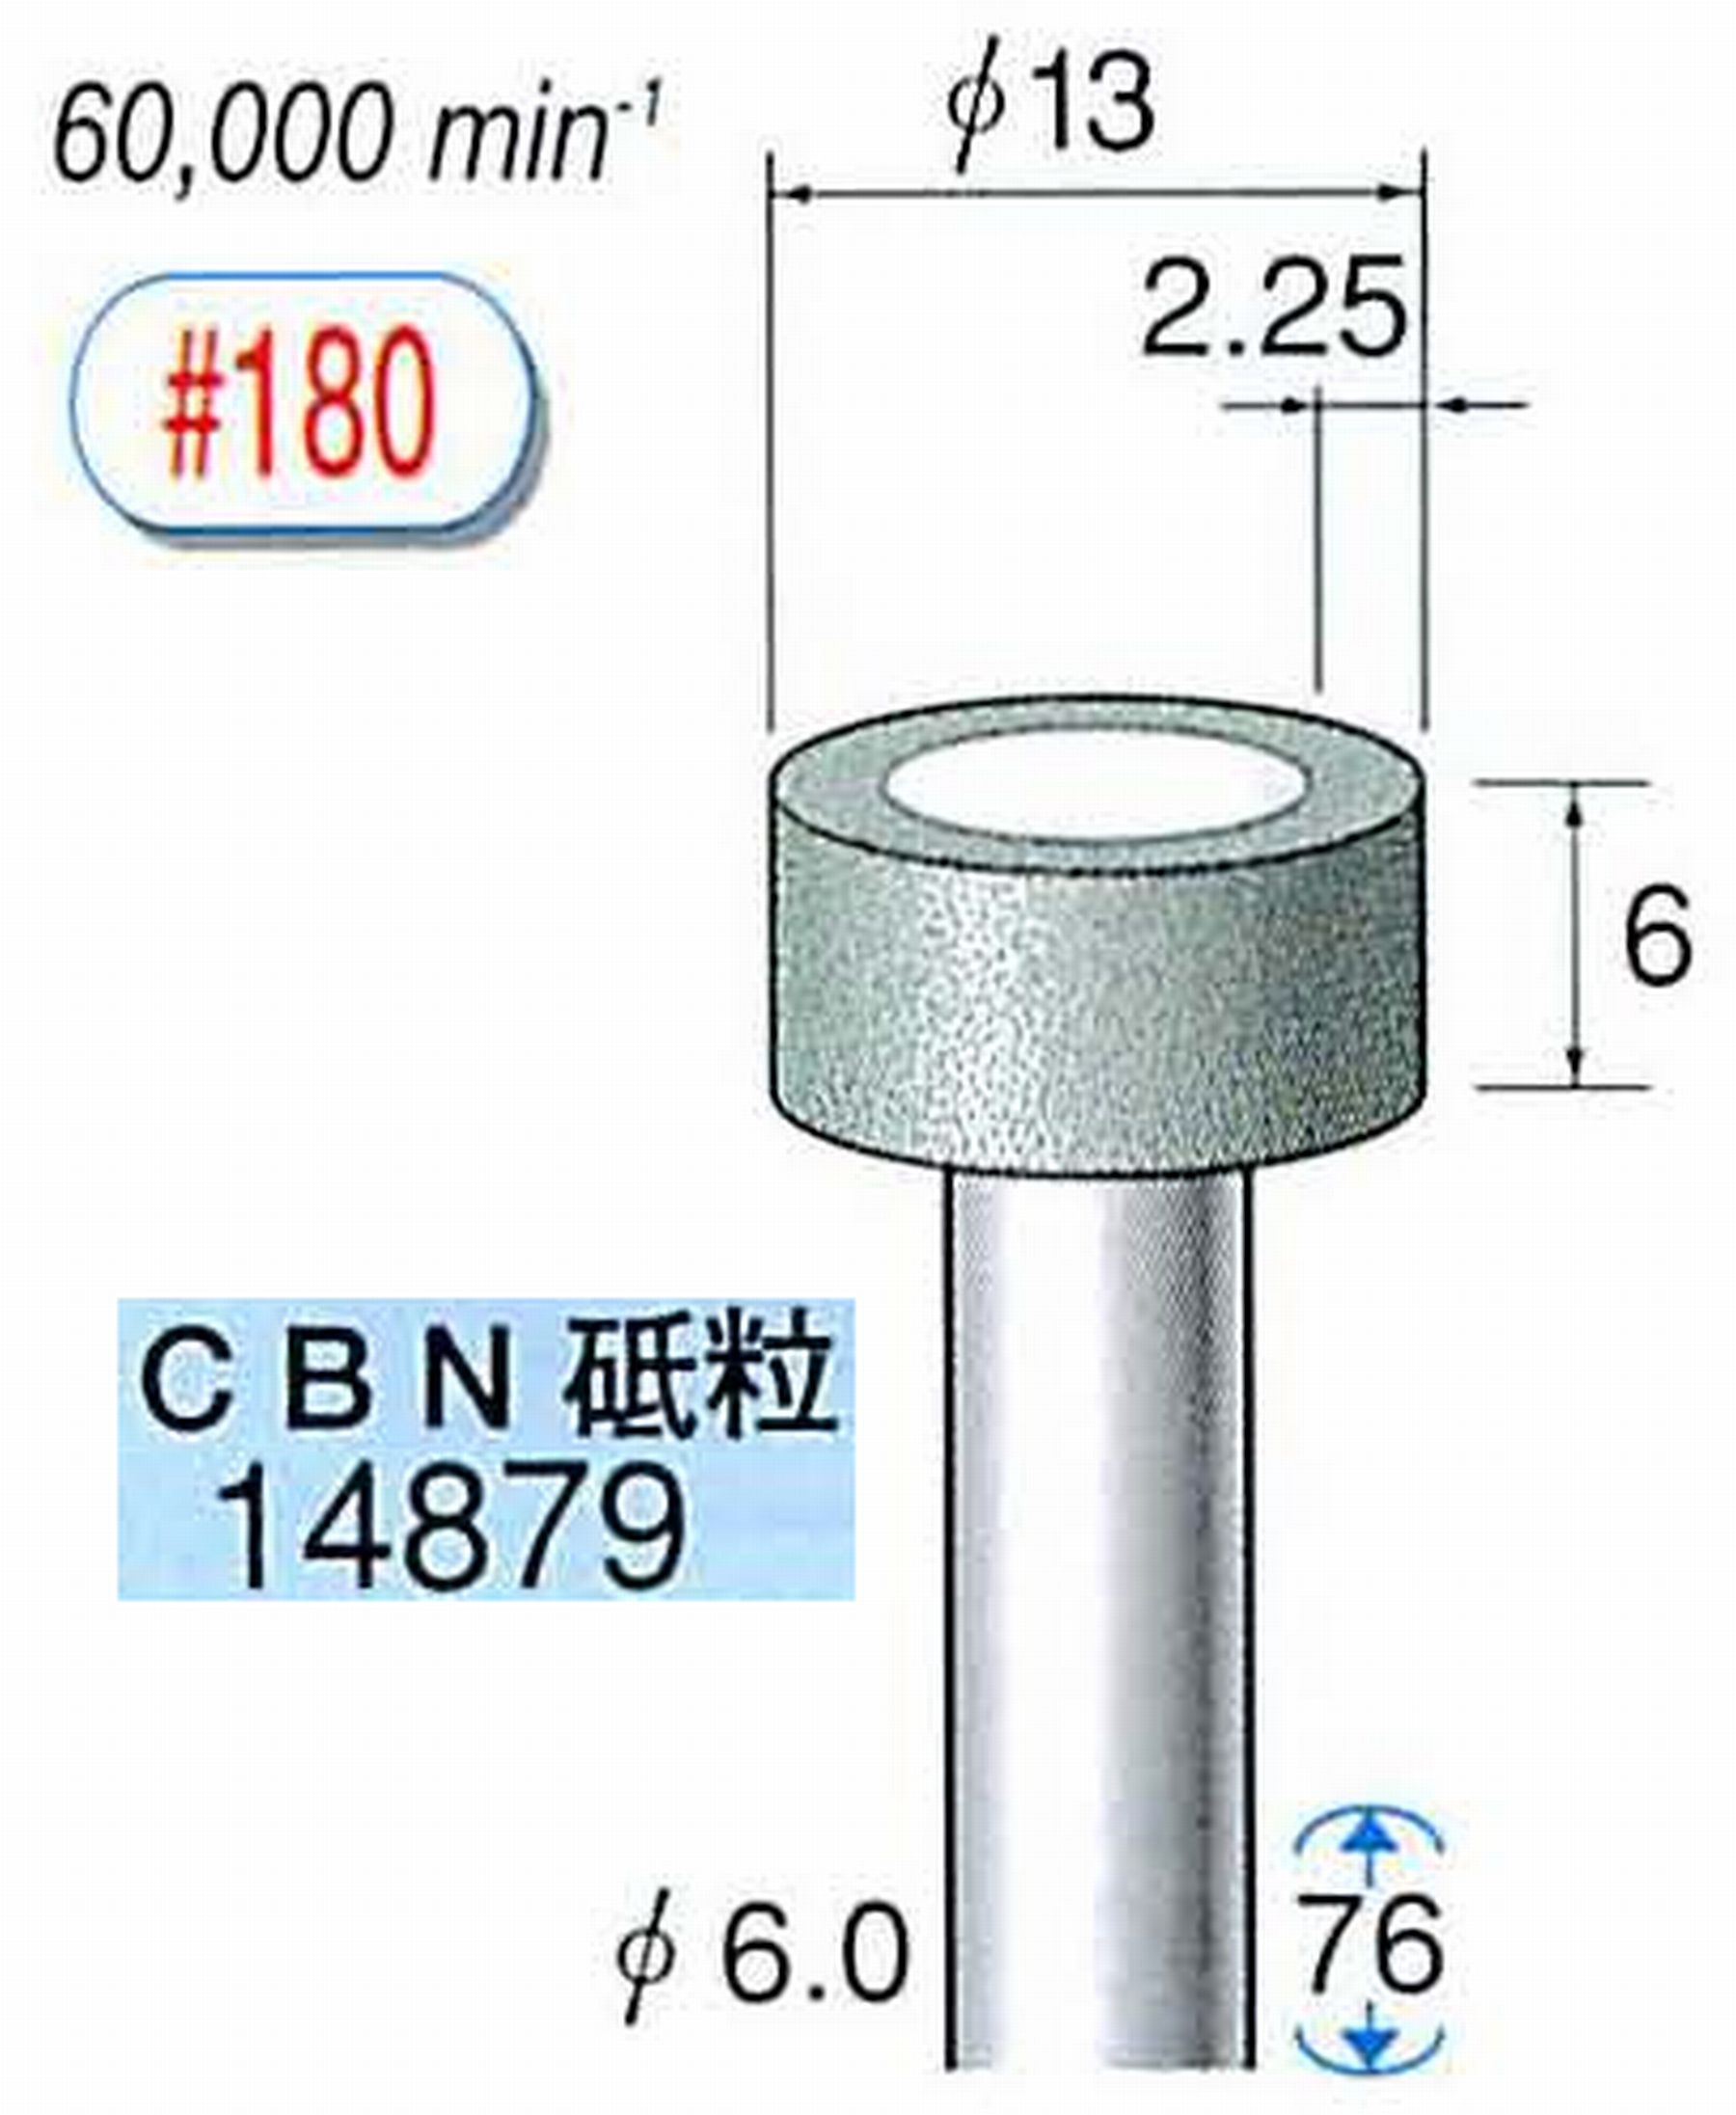 ナカニシ/NAKANISHI ビトリファイドダイヤモンド砥石 CBN砥粒 軸径(シャンク)φ6.0mm 14879